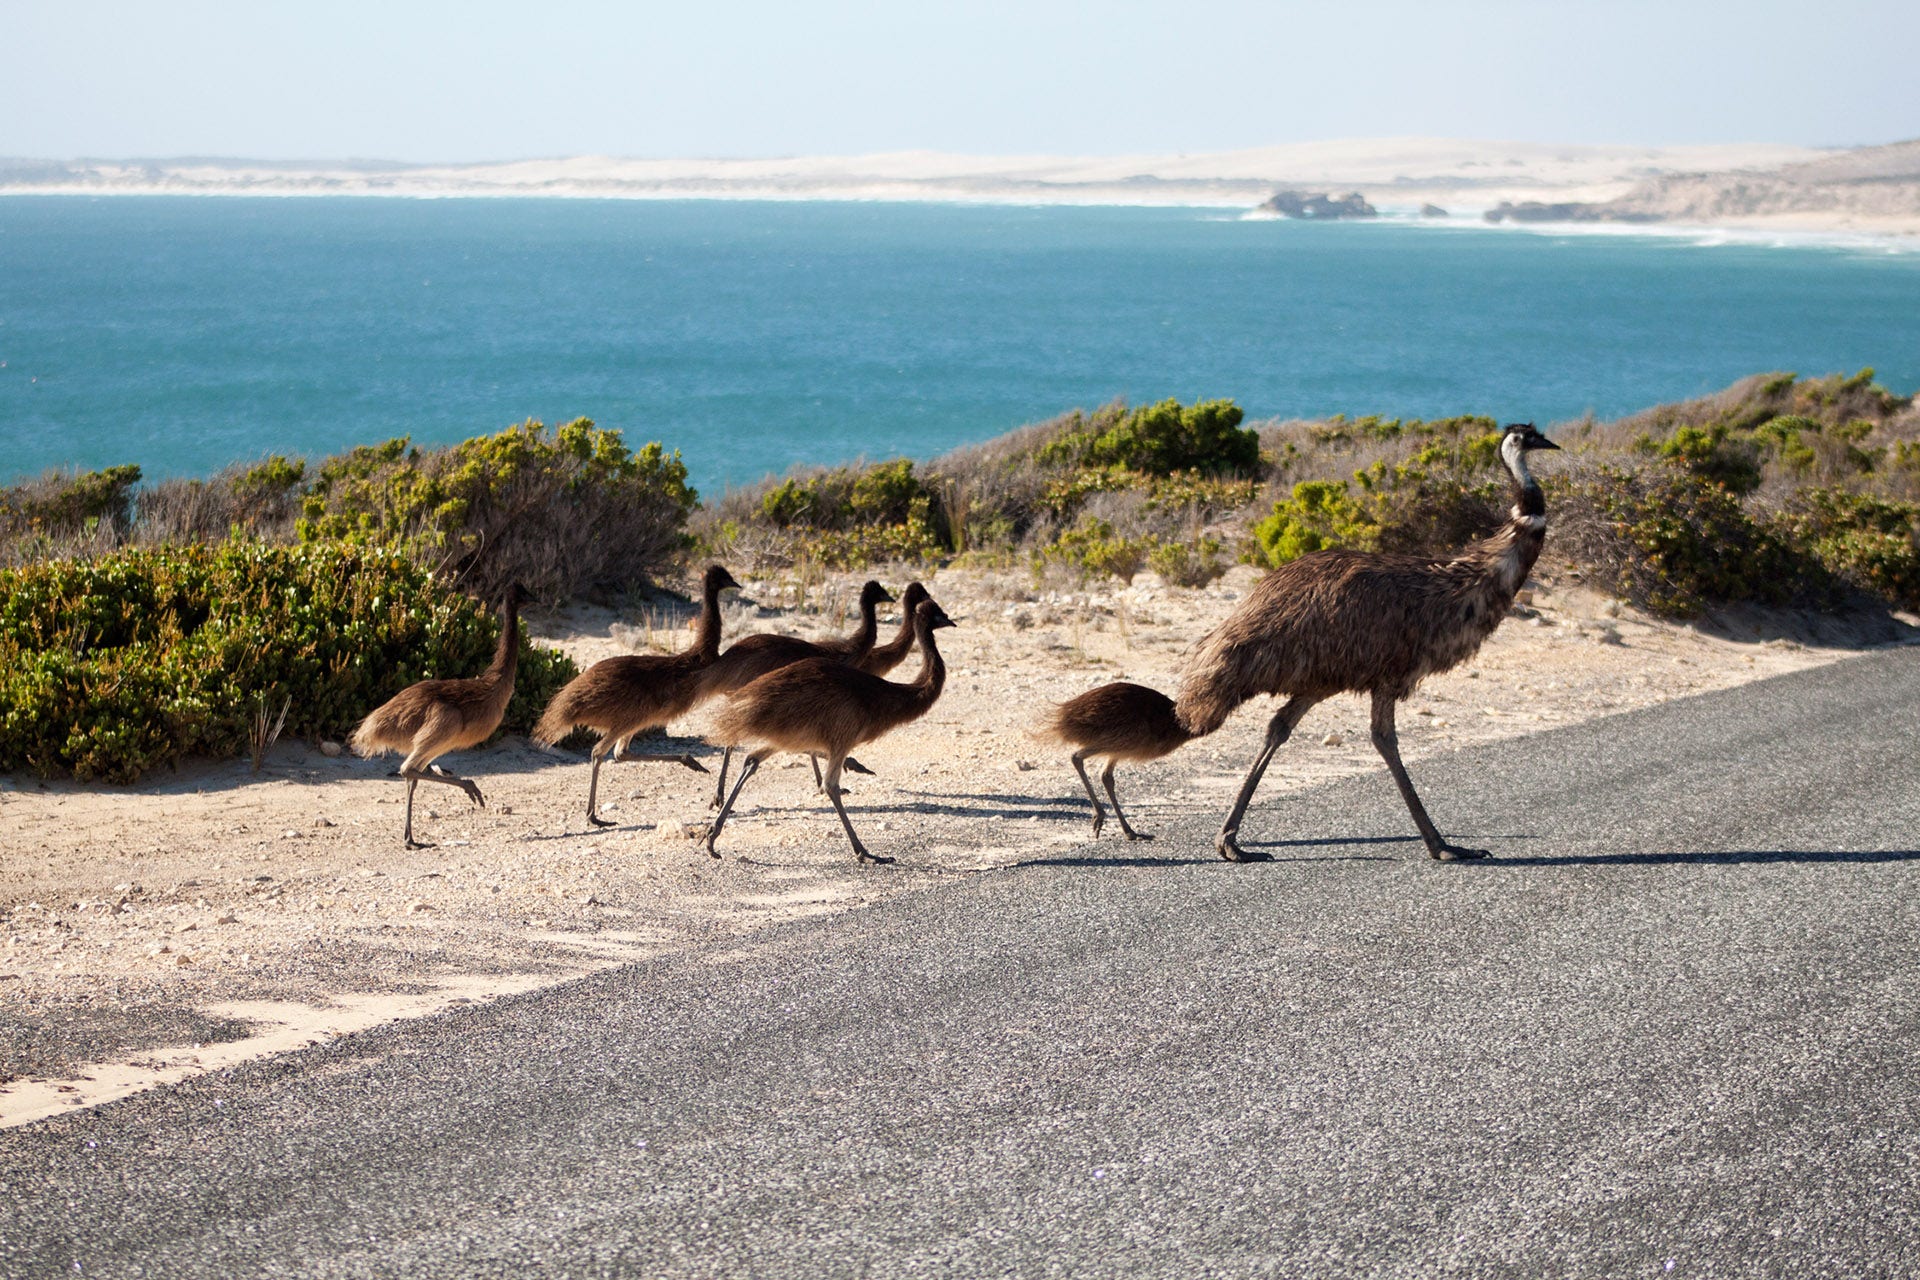 Emu family in Australia